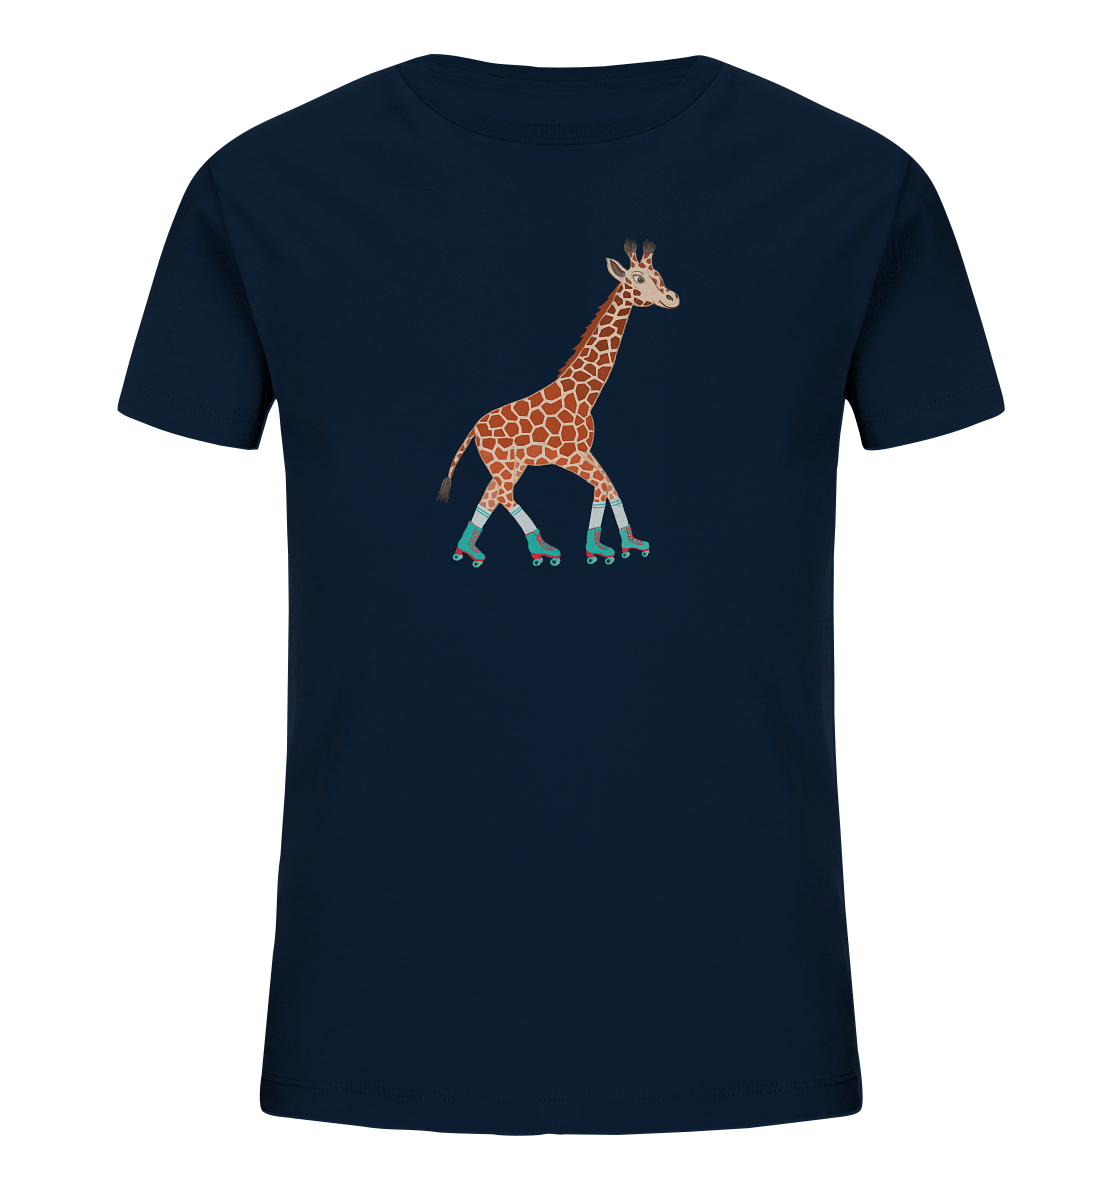 Kinder T-Shirt "Giraffe"